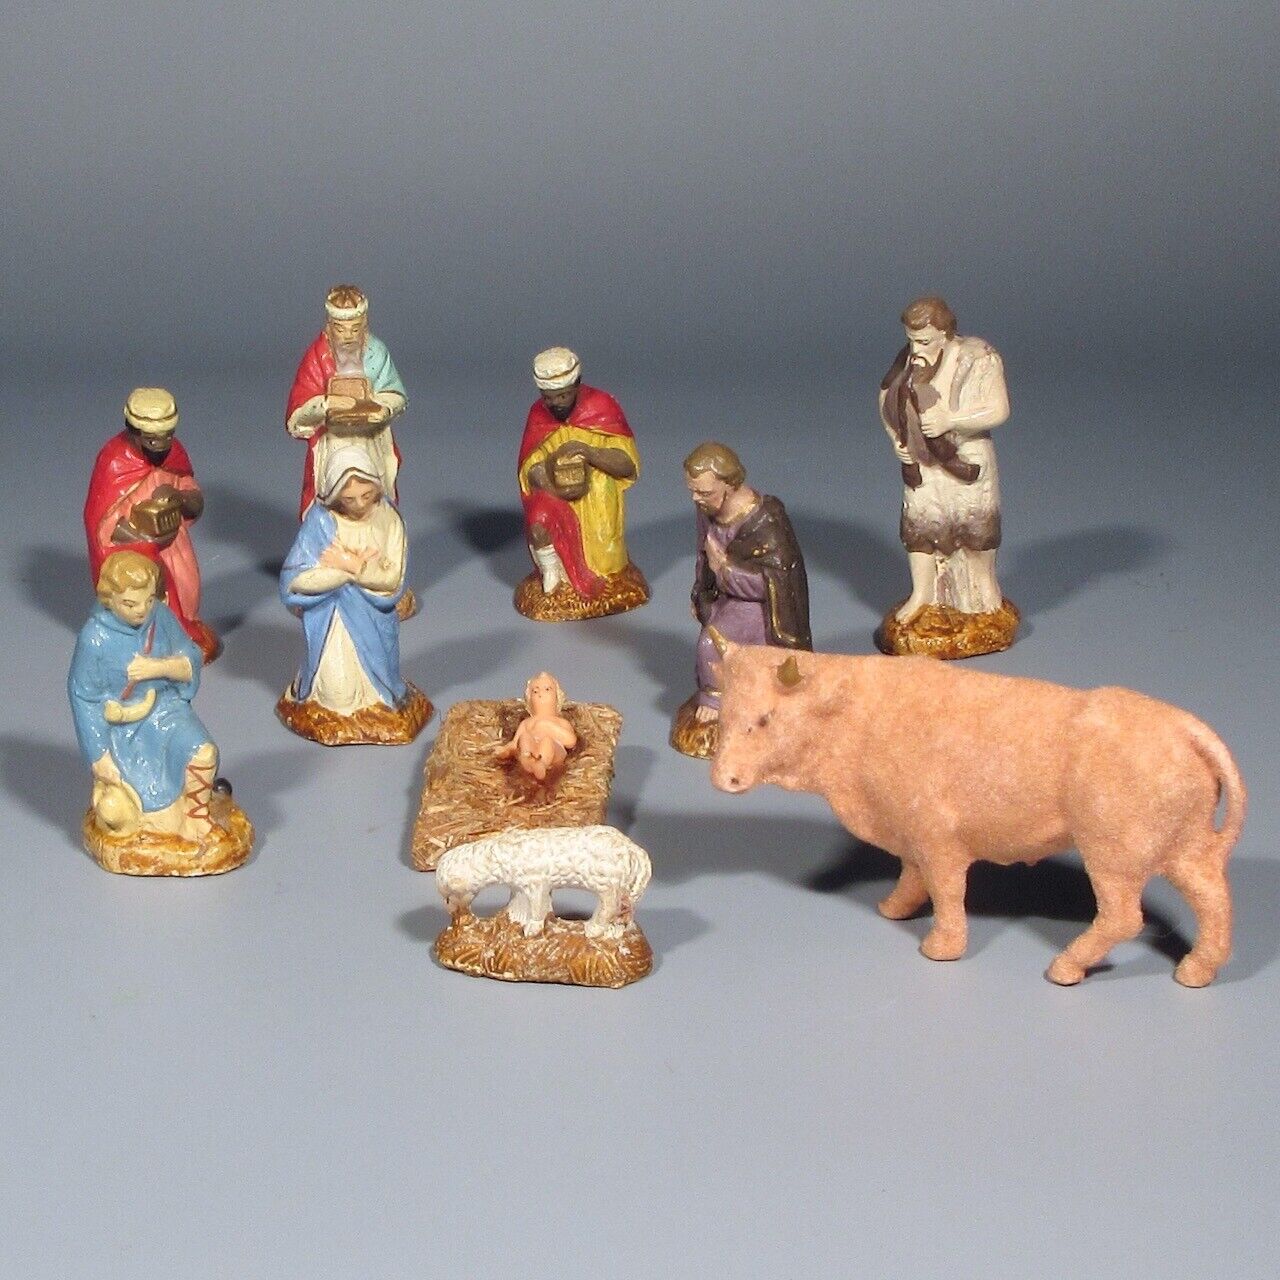 Vintage French Santons Figurines, Christmas Nativity Set Creche Devineau, 10 pcs